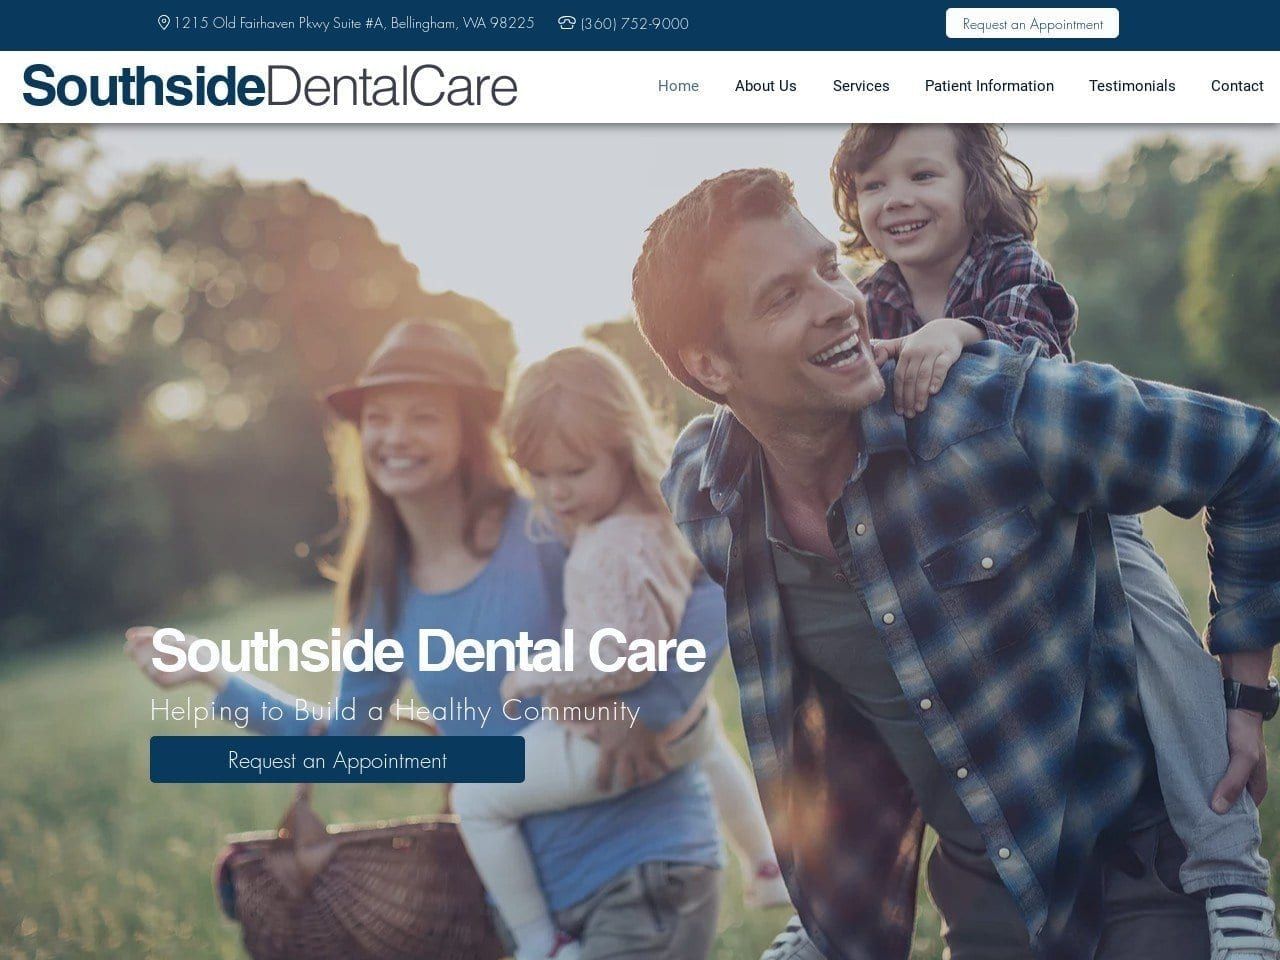 Southside Dental Care Website Screenshot from southsidedentalcare.com